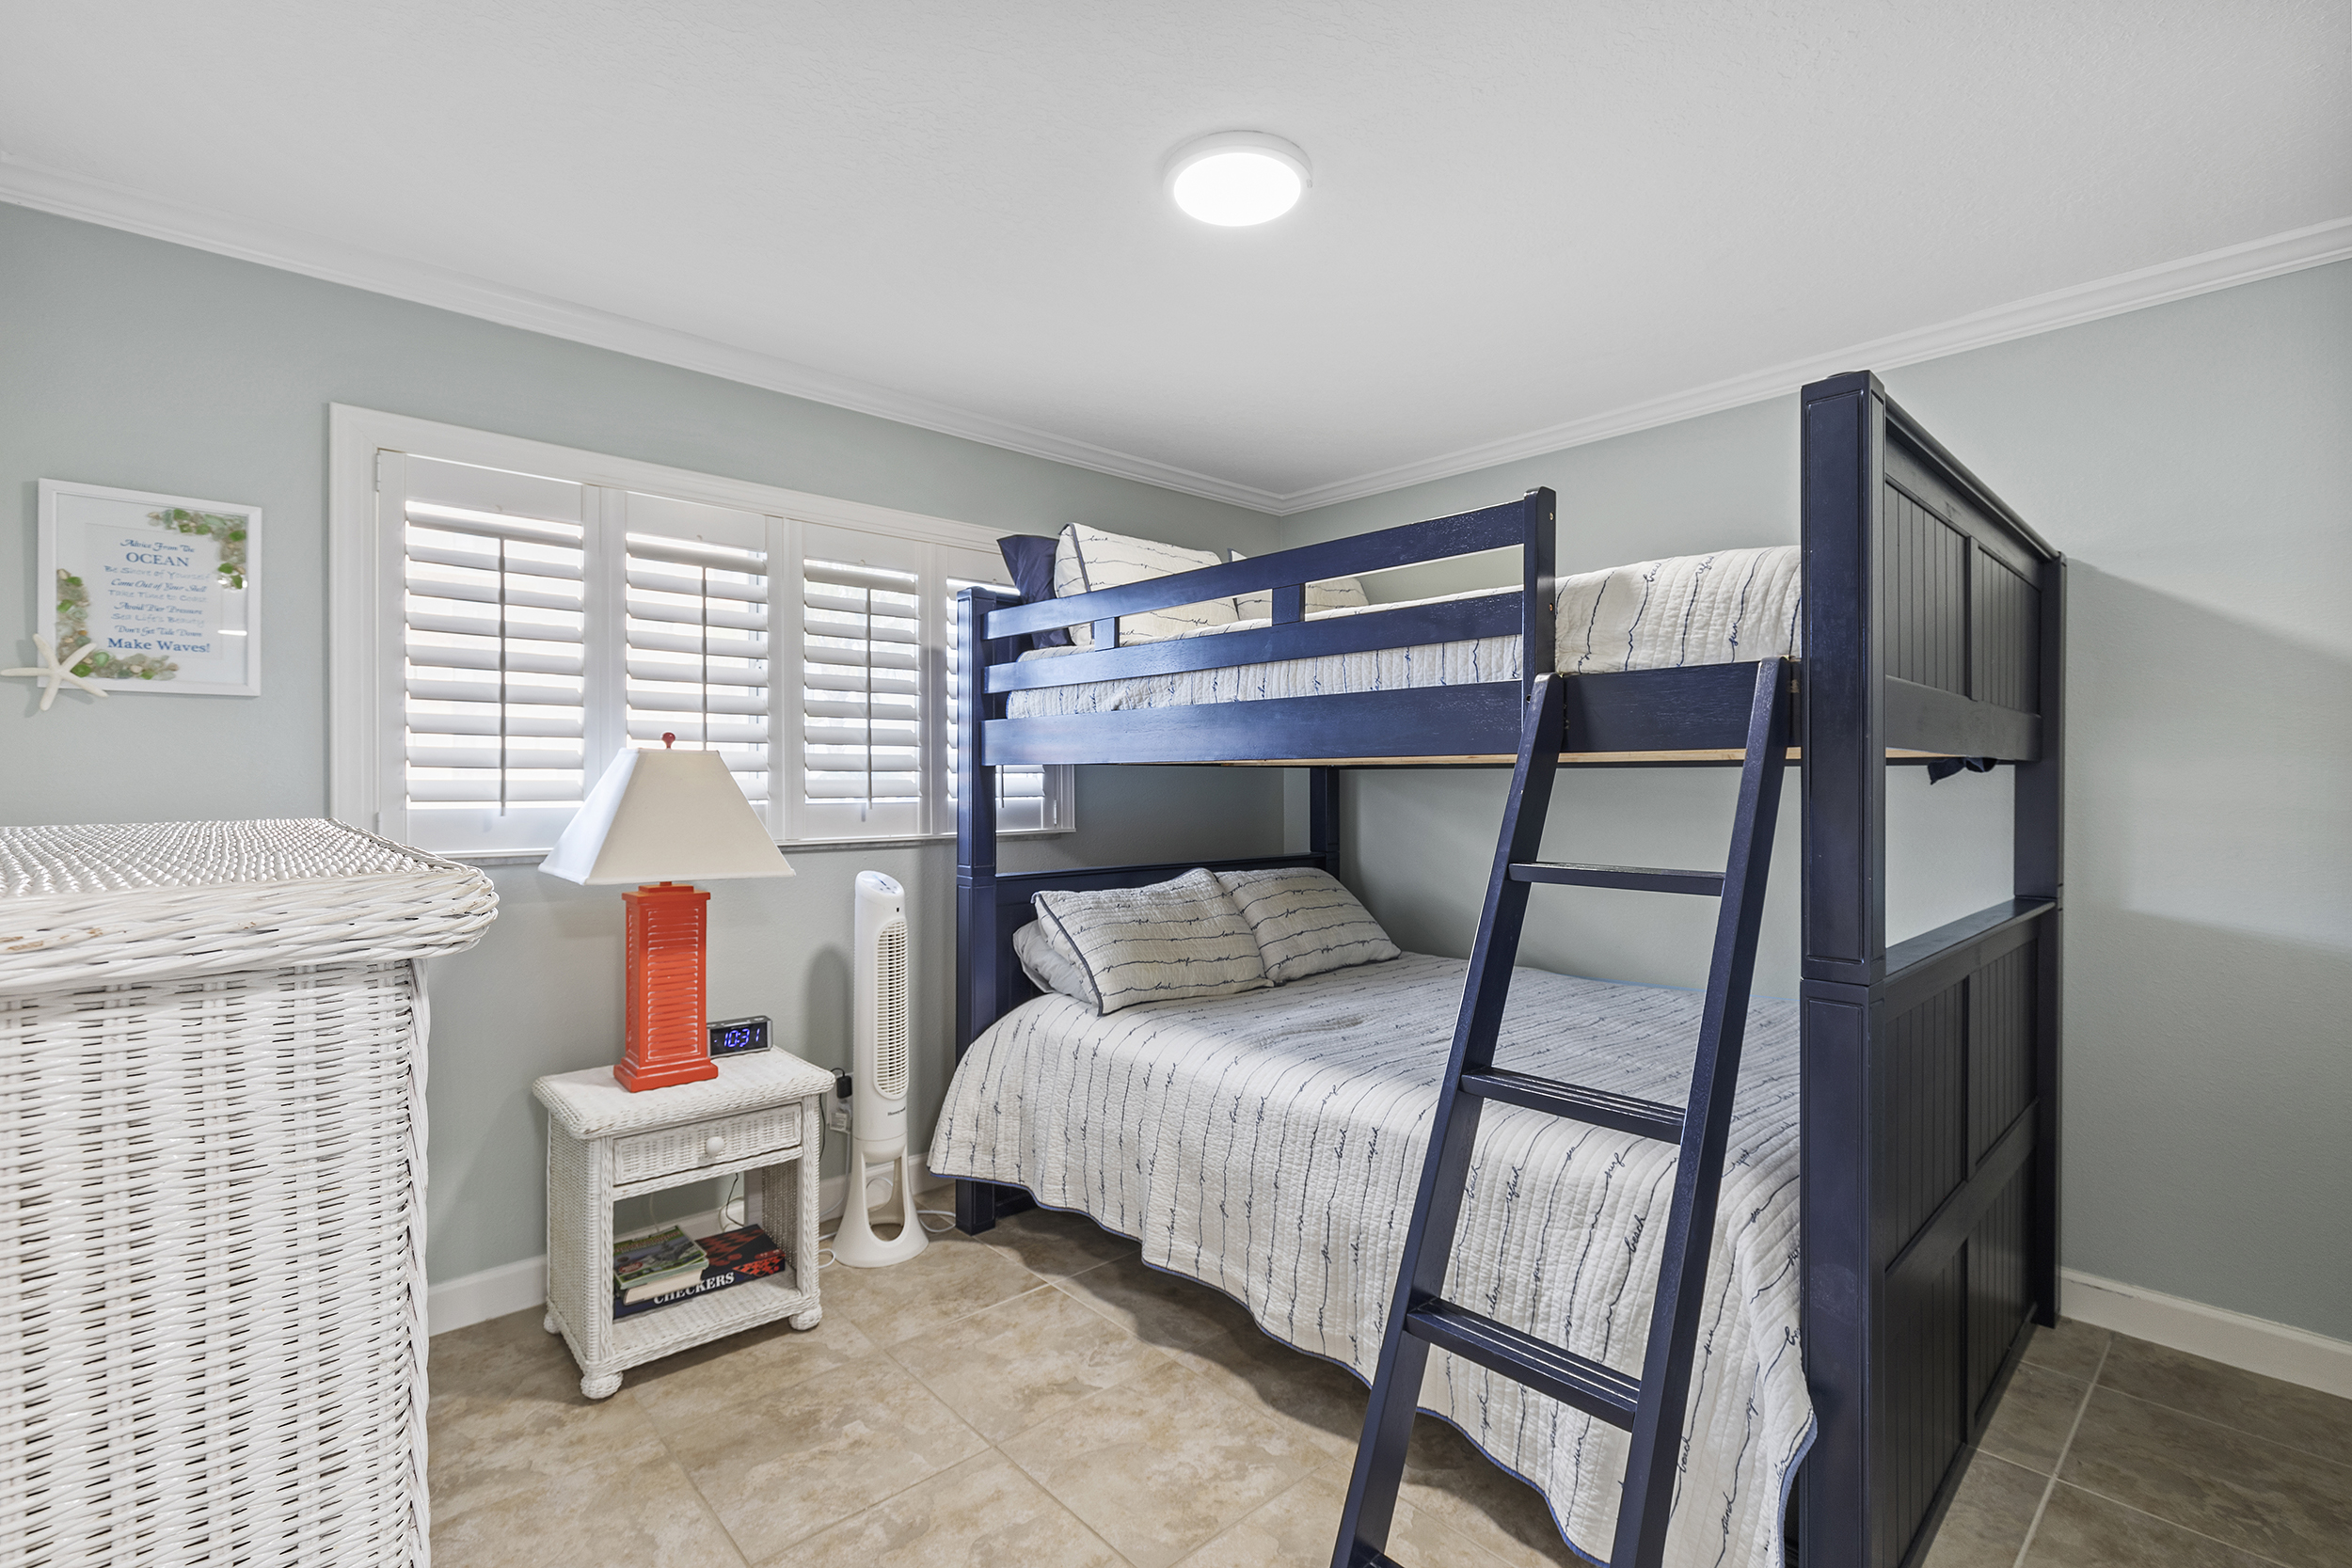 Guest bedroom bunkbeds sleeps 5